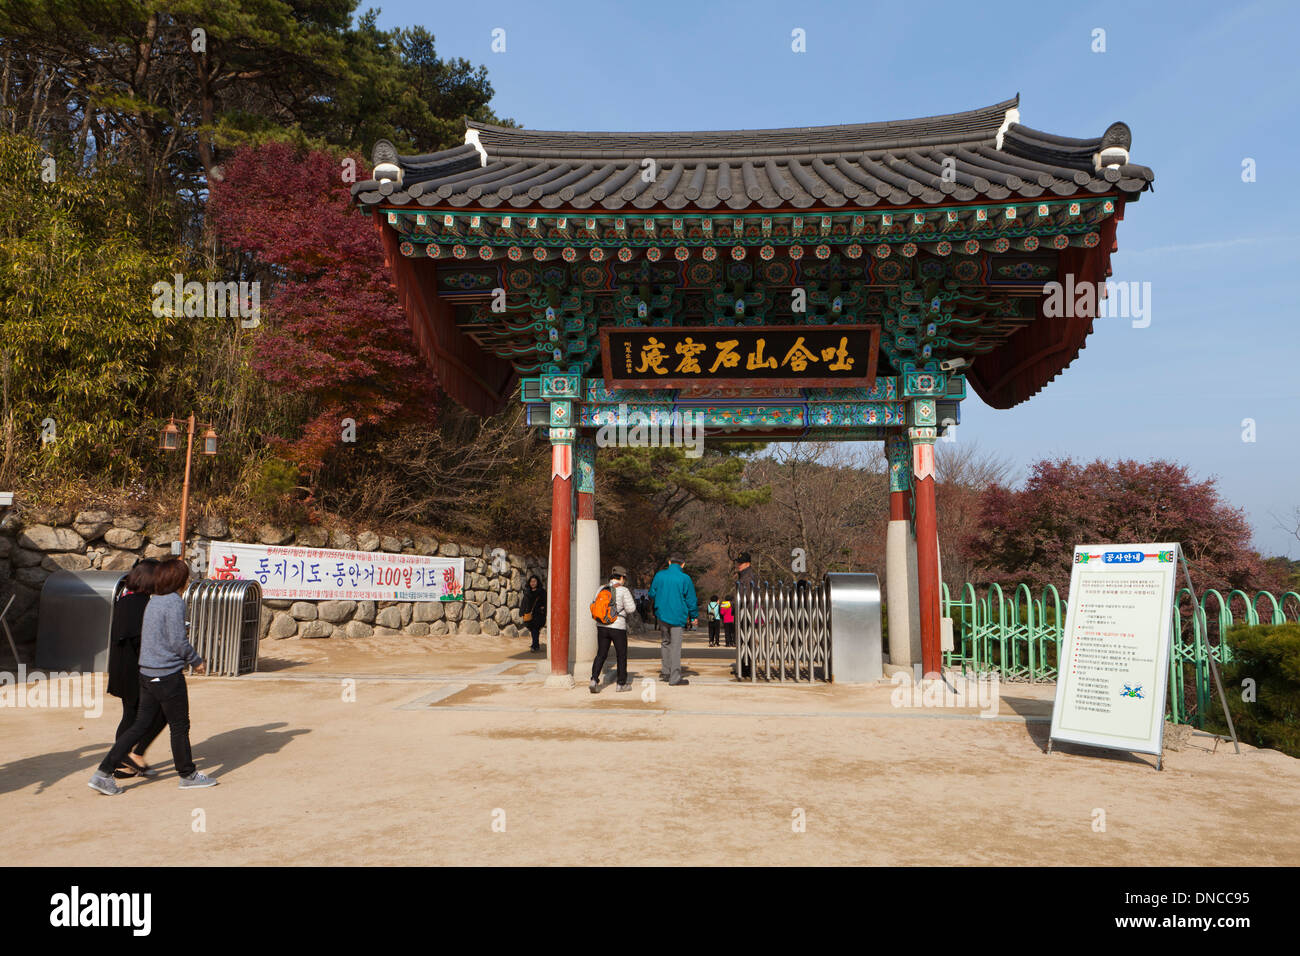 Eingangstor zum buddhistischen Tempel Seokguram - Gyeongju, Südkorea Stockfoto